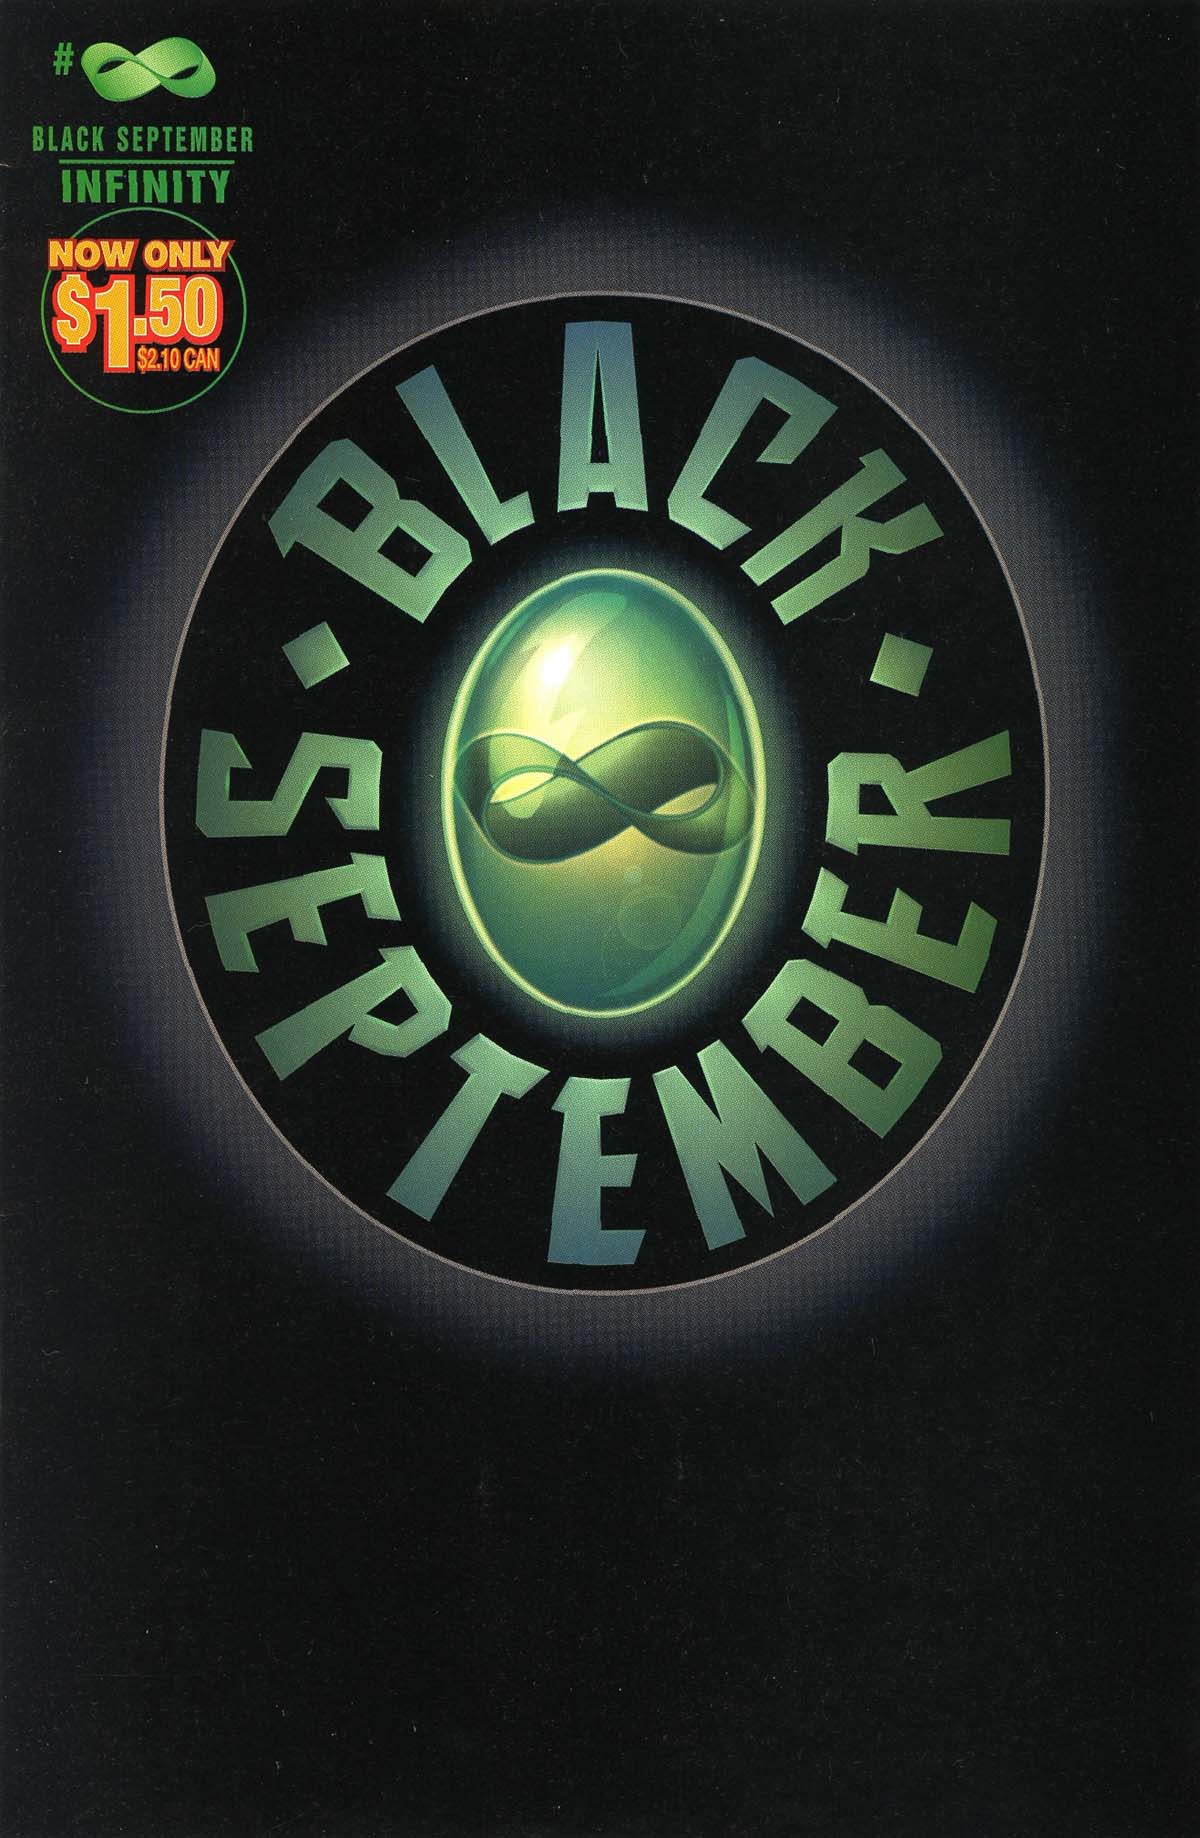 Read online Black September comic -  Issue # Full - 1